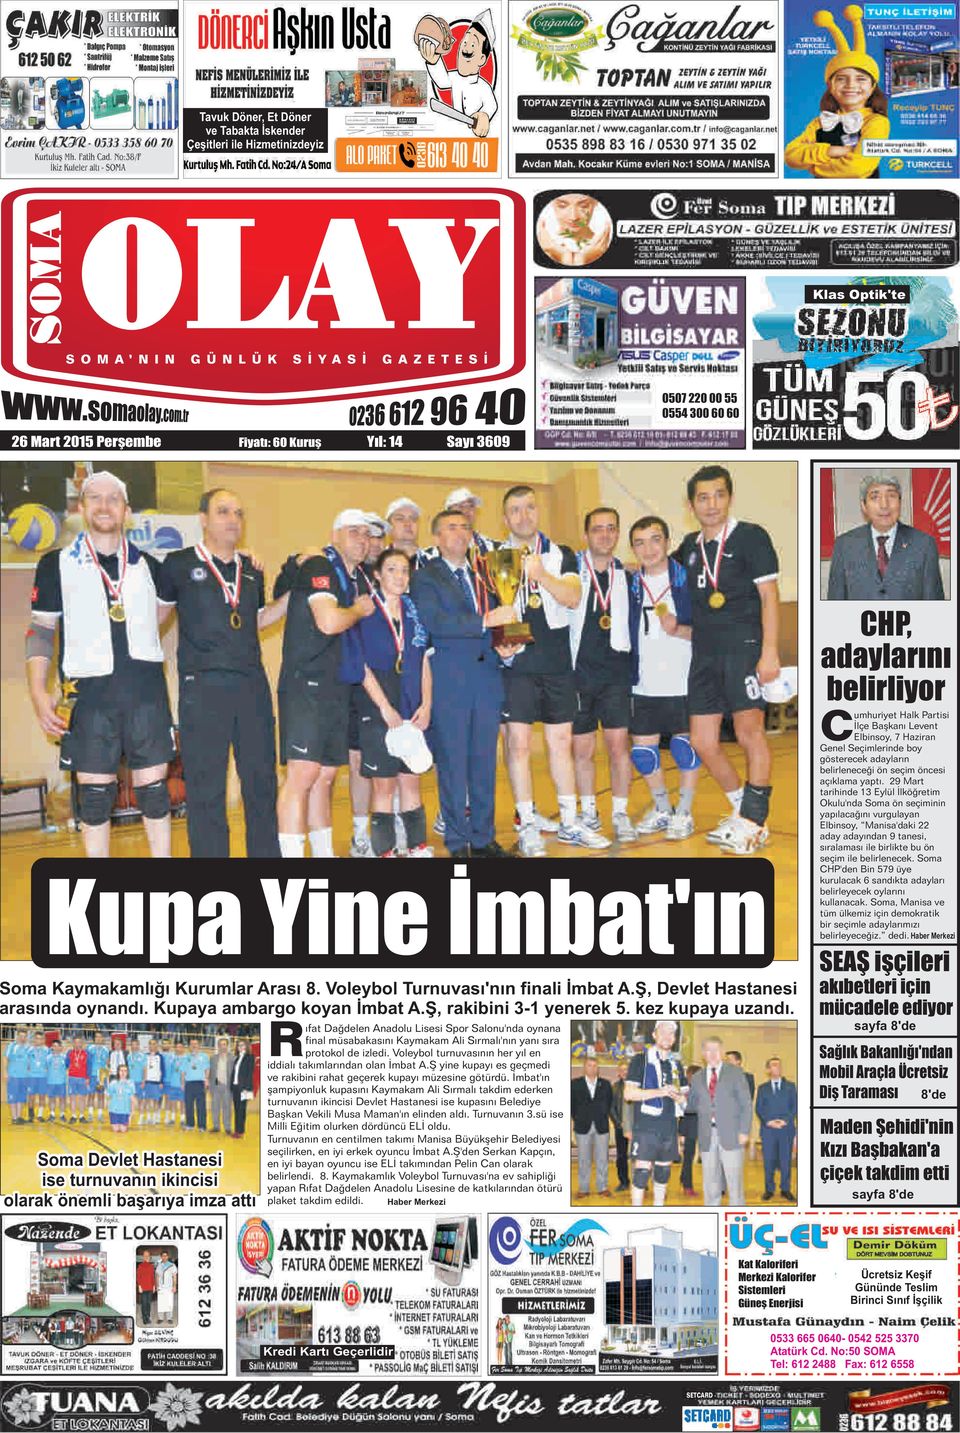 Soma Devlet Hastanesi ise turnuvanın ikincisi olarak önemli başarıya imza attı ıfat Dağdelen Anadolu Lisesi Spor Salonu'nda oynana final müsabakasını Kaymakam Ali Sırmalı'nın yanı sıra Rprotokol de